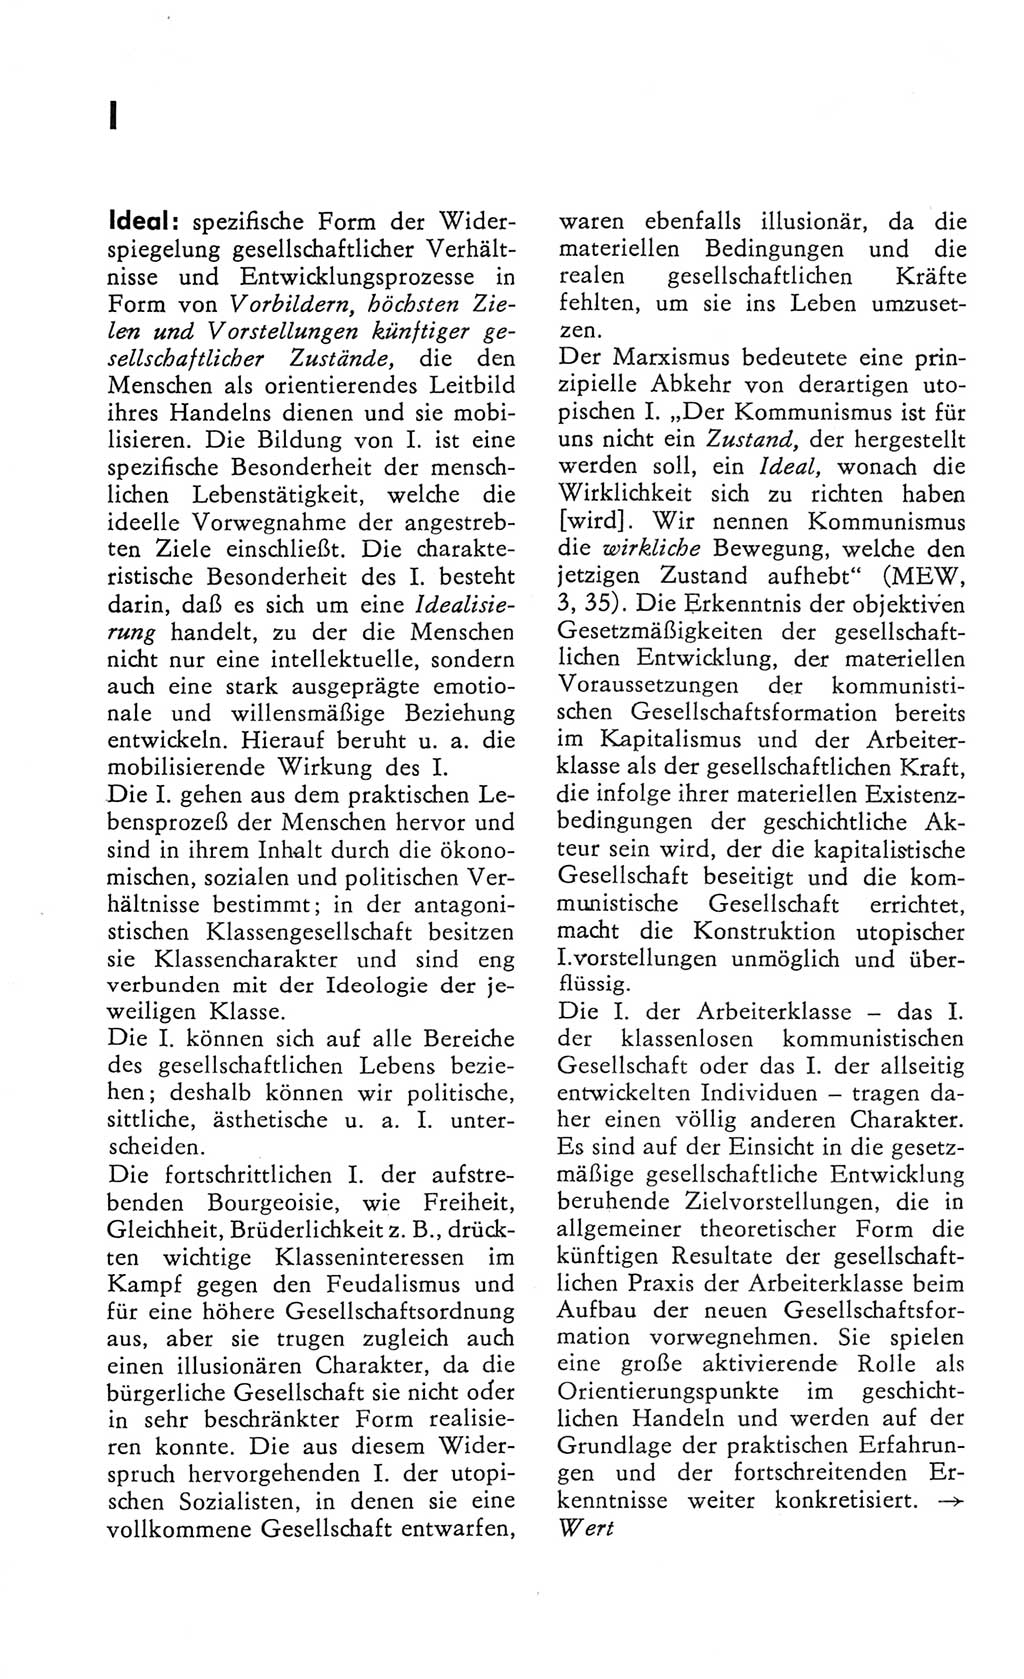 Kleines Wörterbuch der marxistisch-leninistischen Philosophie [Deutsche Demokratische Republik (DDR)] 1982, Seite 154 (Kl. Wb. ML Phil. DDR 1982, S. 154)